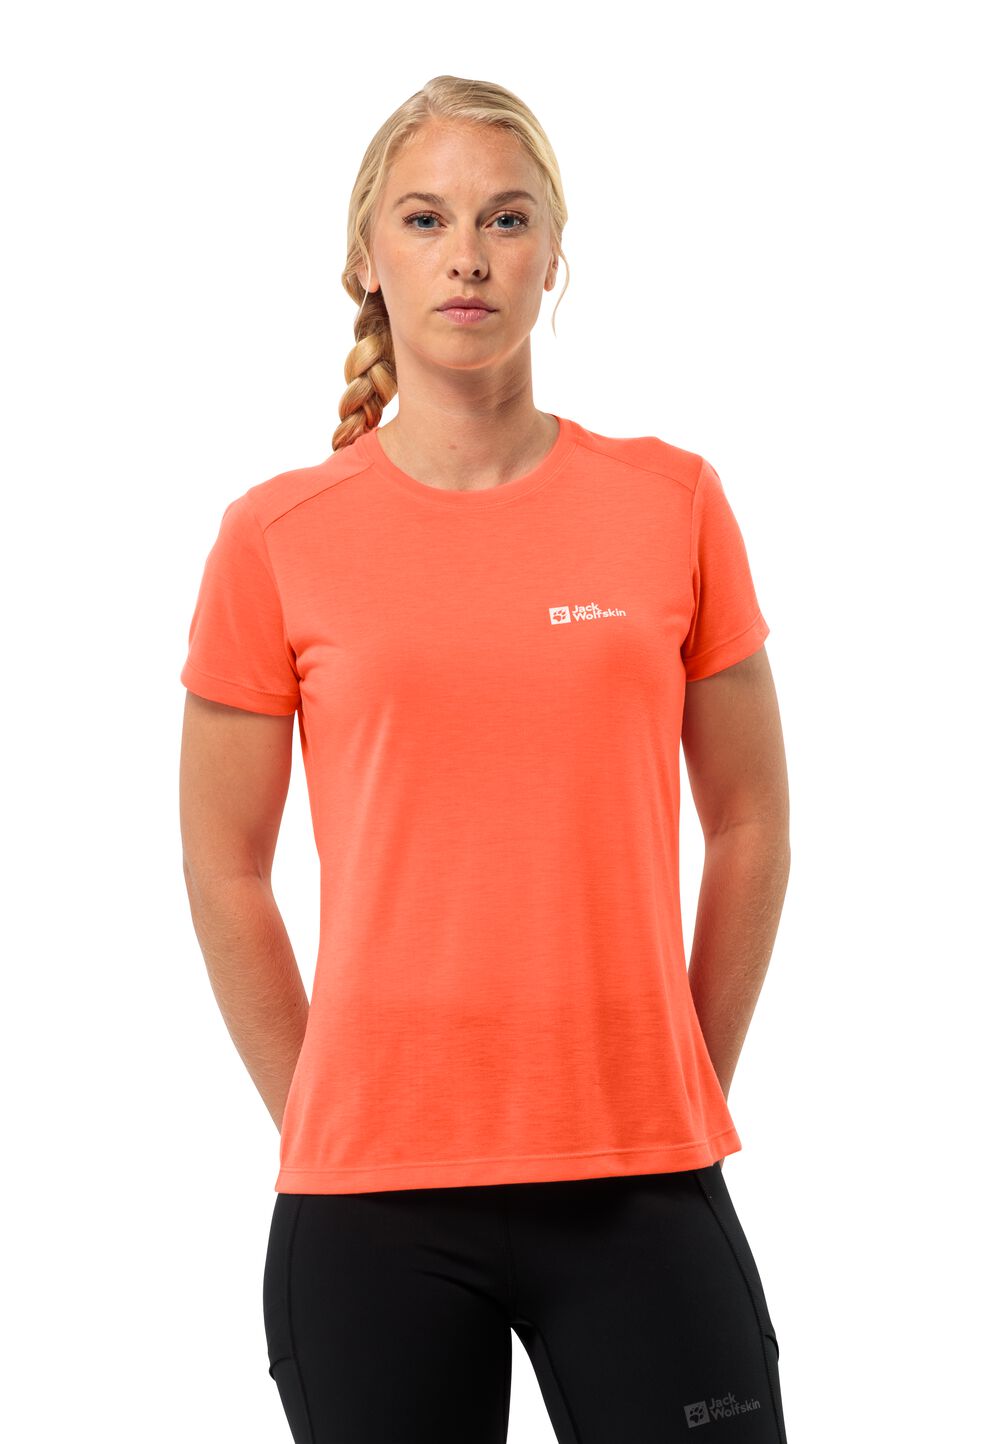 Jack Wolfskin Vonnan S S T-Shirt Women Functioneel shirt Dames S rood digital orange